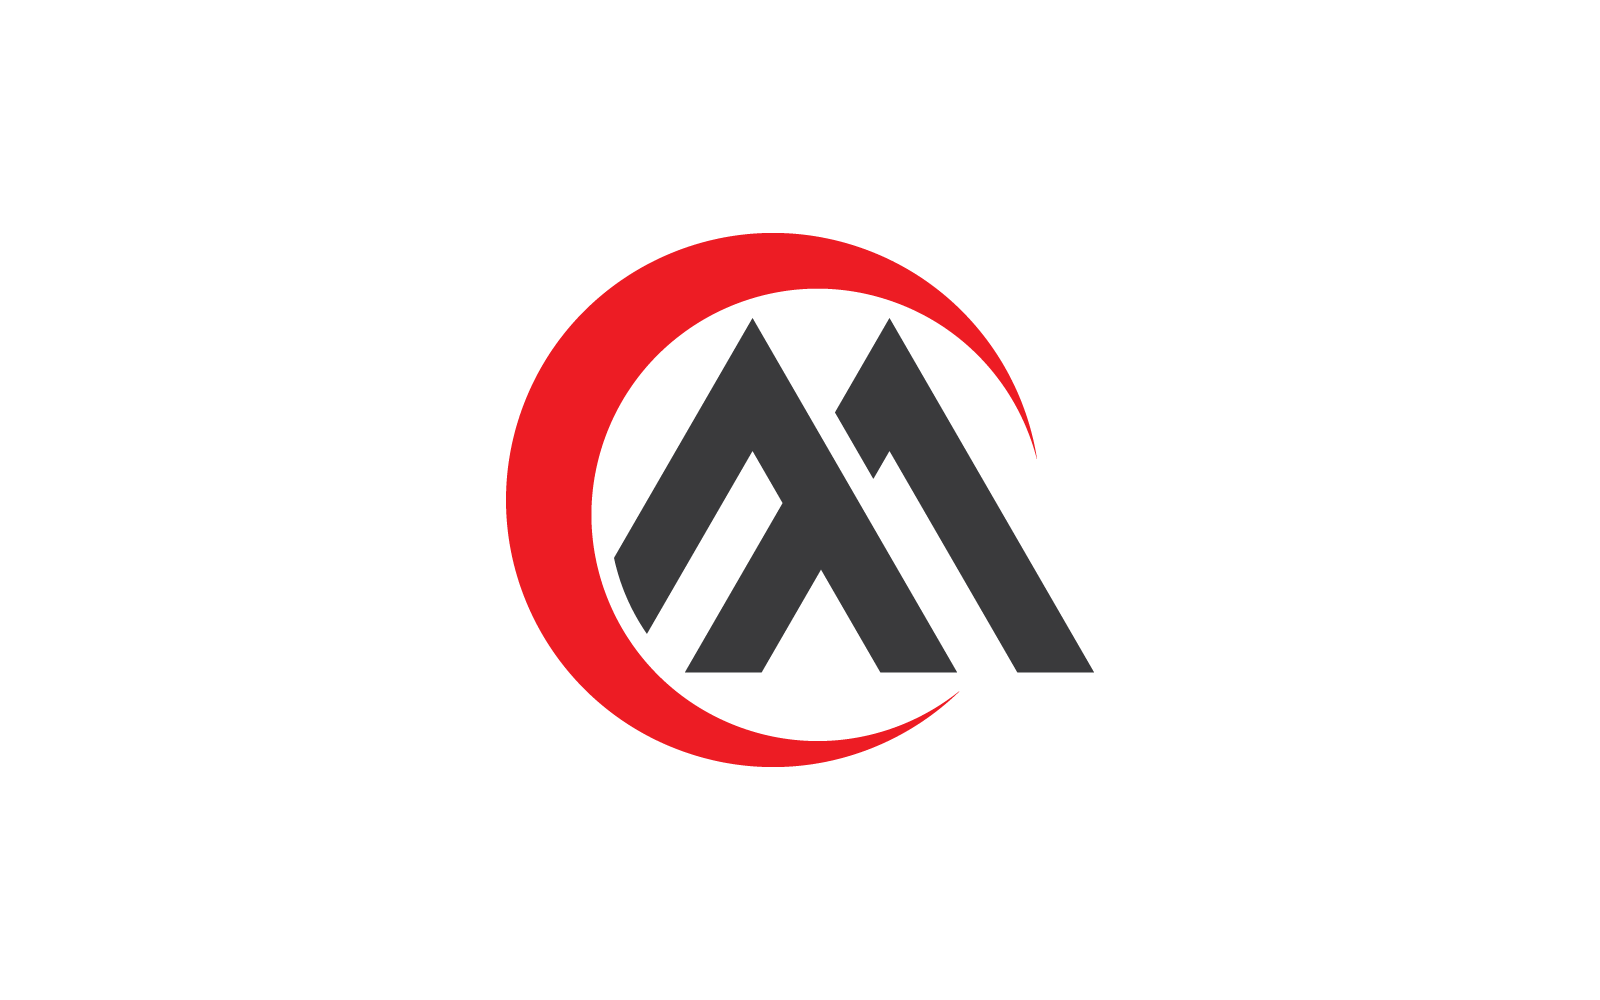 İlk M harfi logo vektörü düz tasarımı